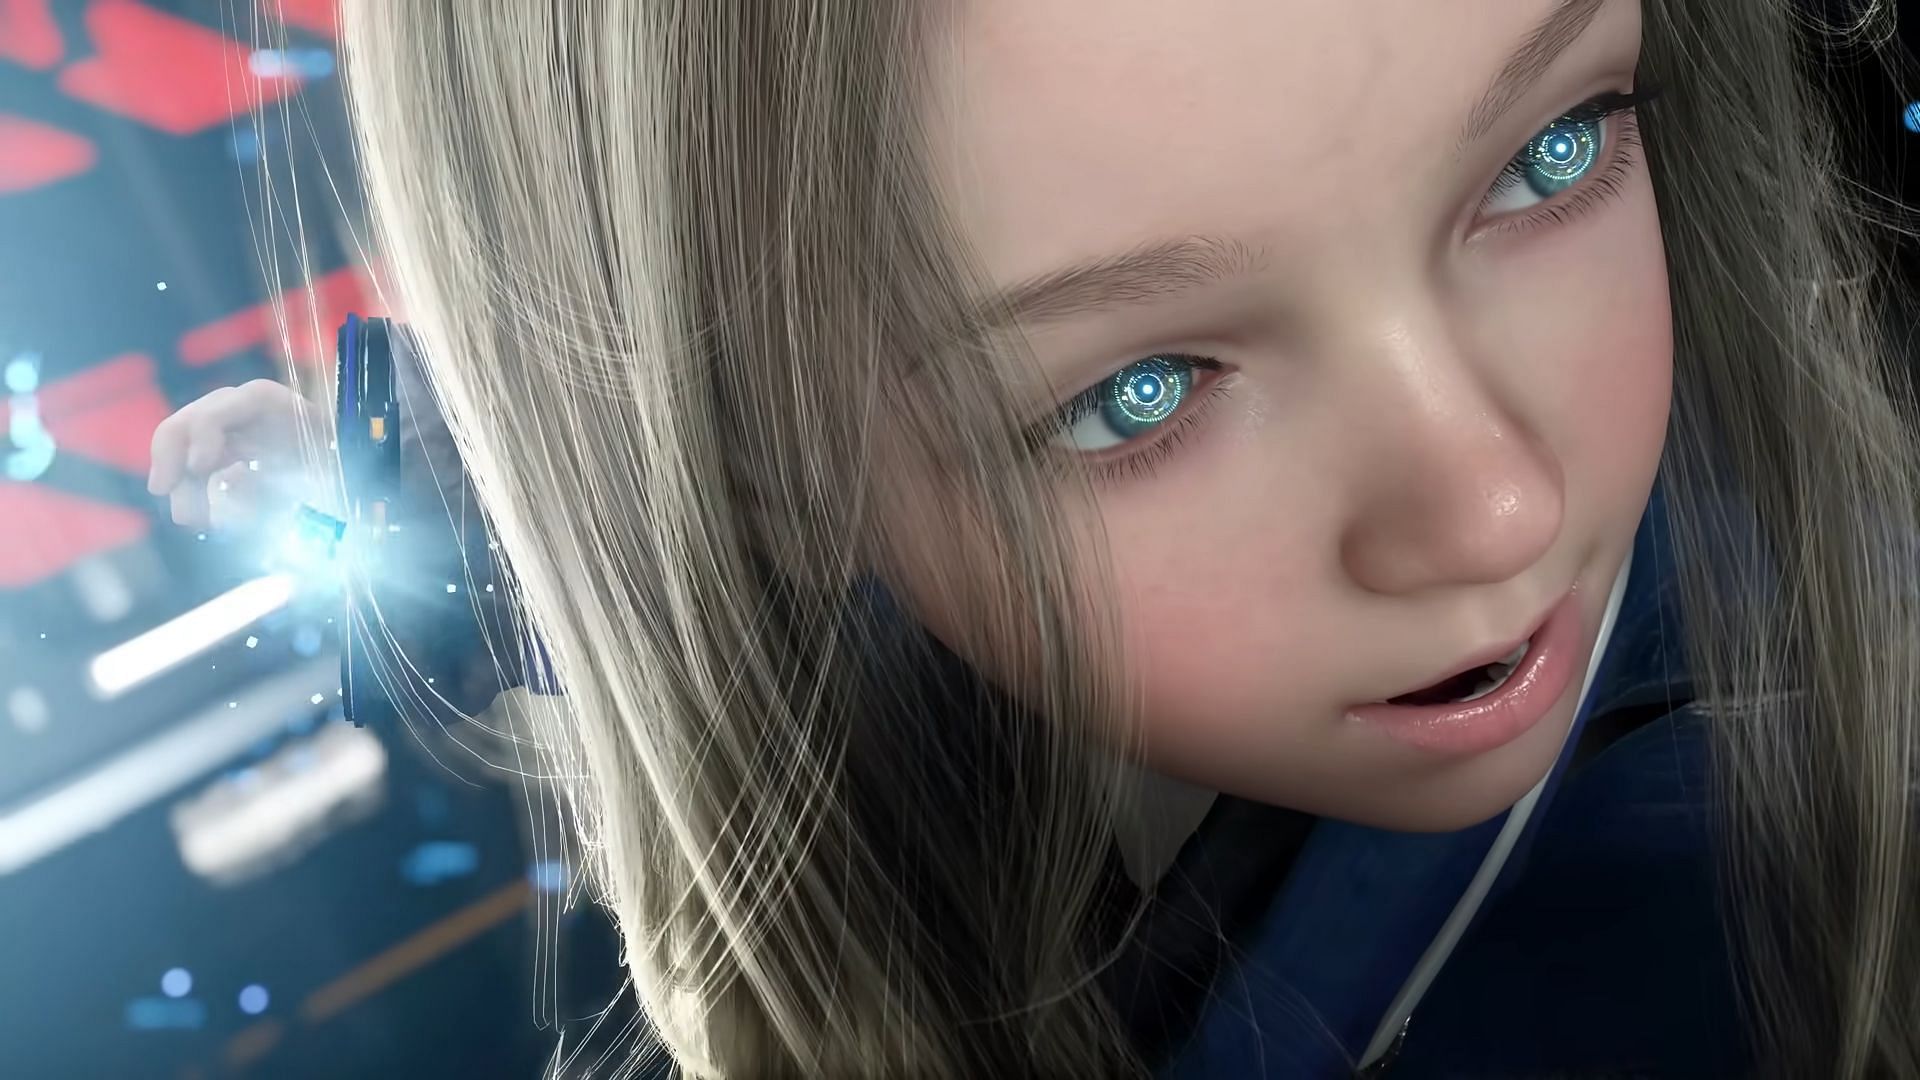 A new gameplay trailer for Pragmata was revealed at the Capcom Showcase (Image via Capcom)